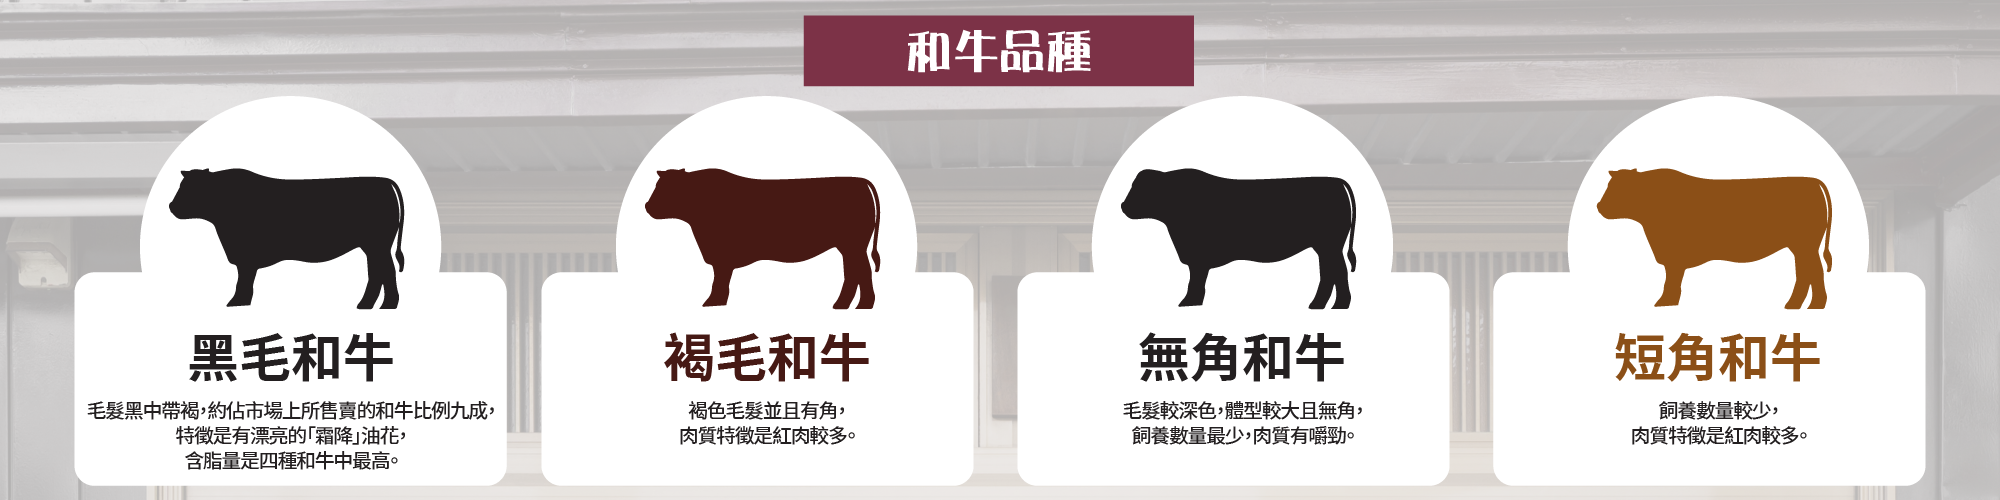 包括黑毛和牛在內的和牛定義